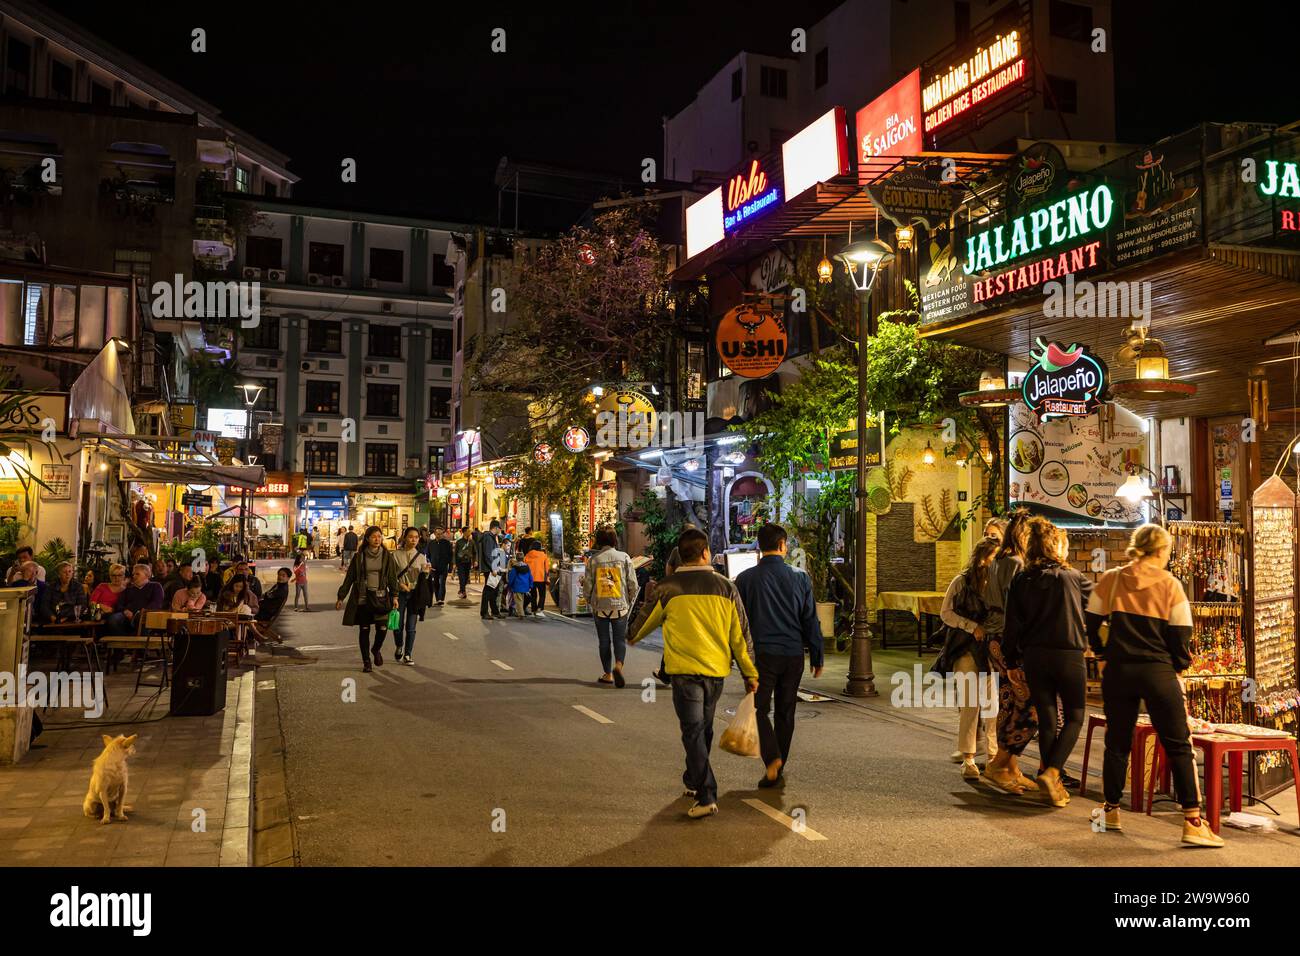 La notte nel centro di Hue in Vietnam Foto Stock